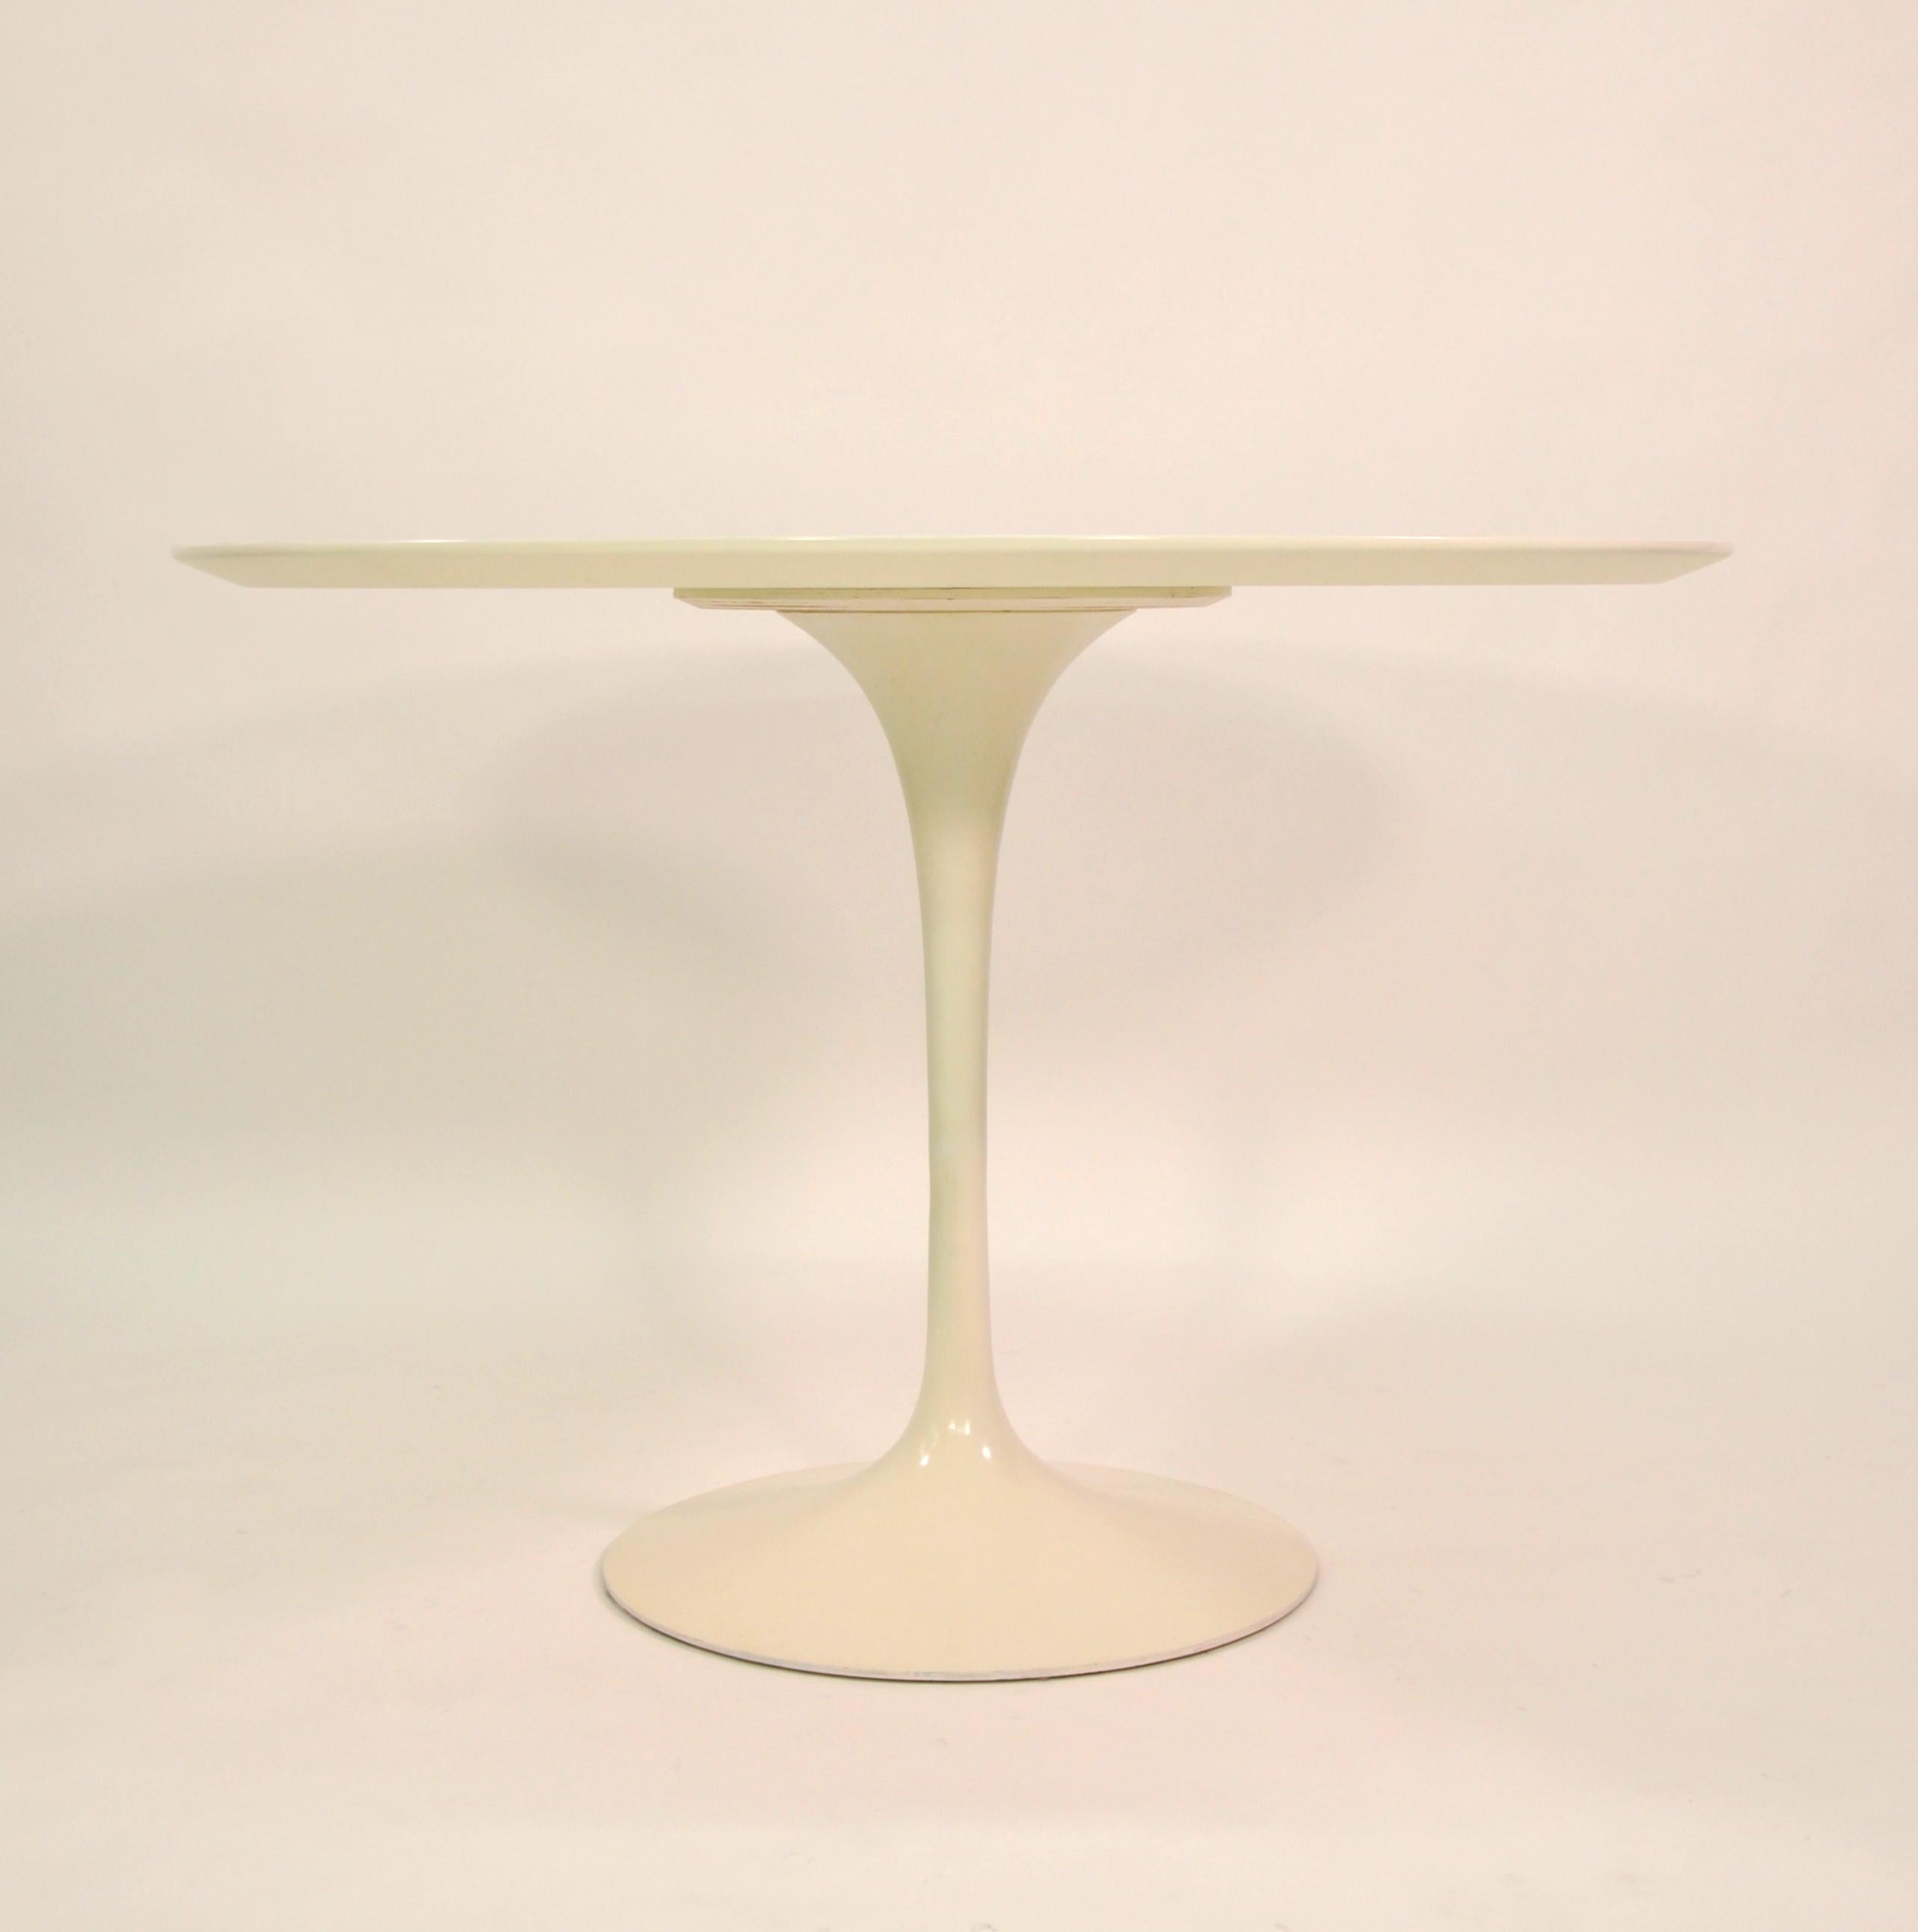 American Eero Saarinen for Knoll Tulip Dining Table